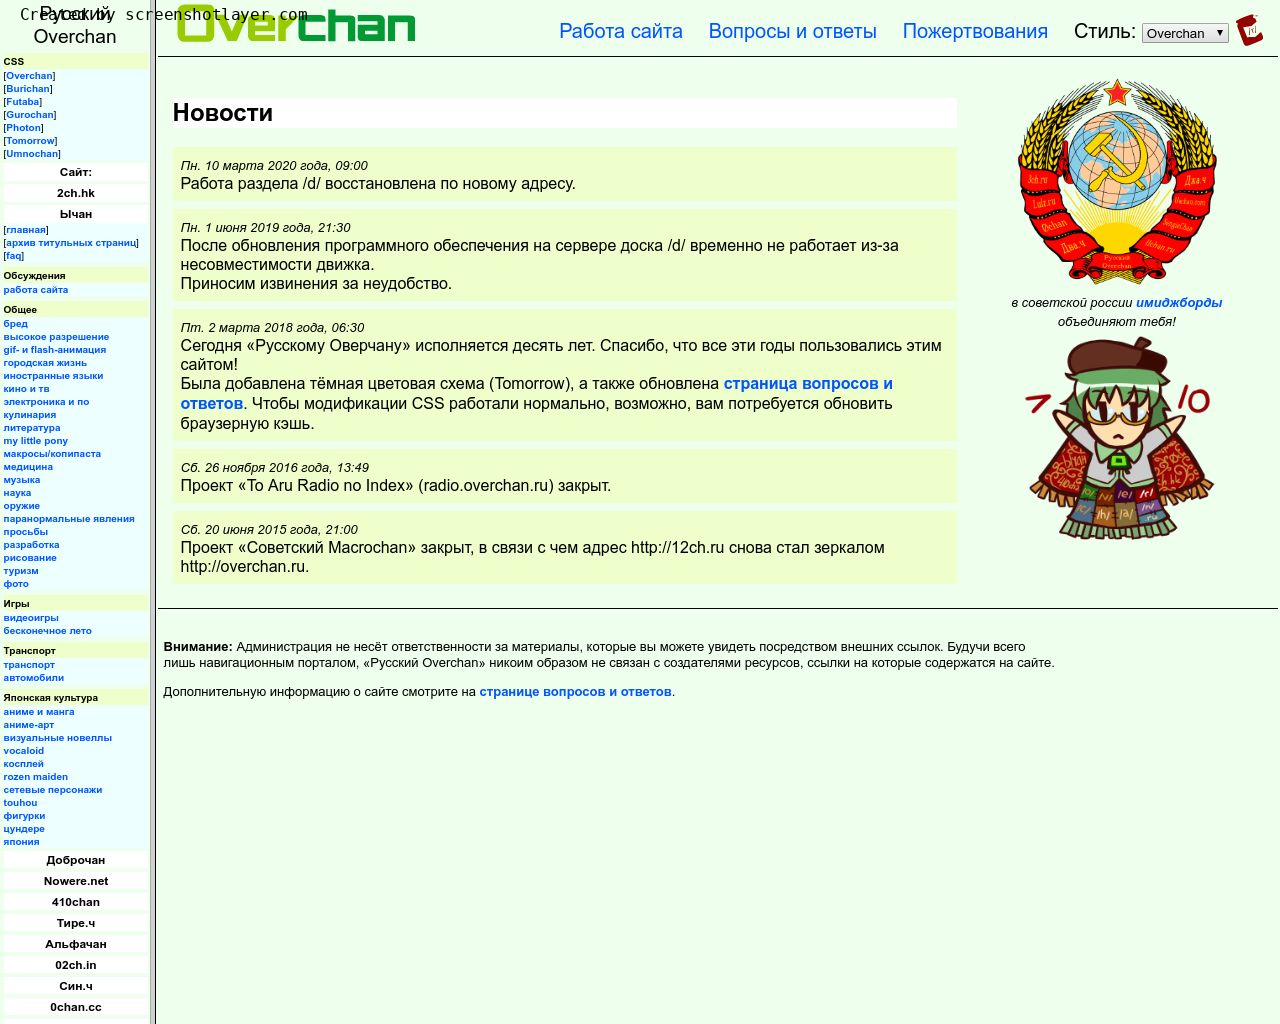 Изображение сайта overchan.ru в разрешении 1280x1024